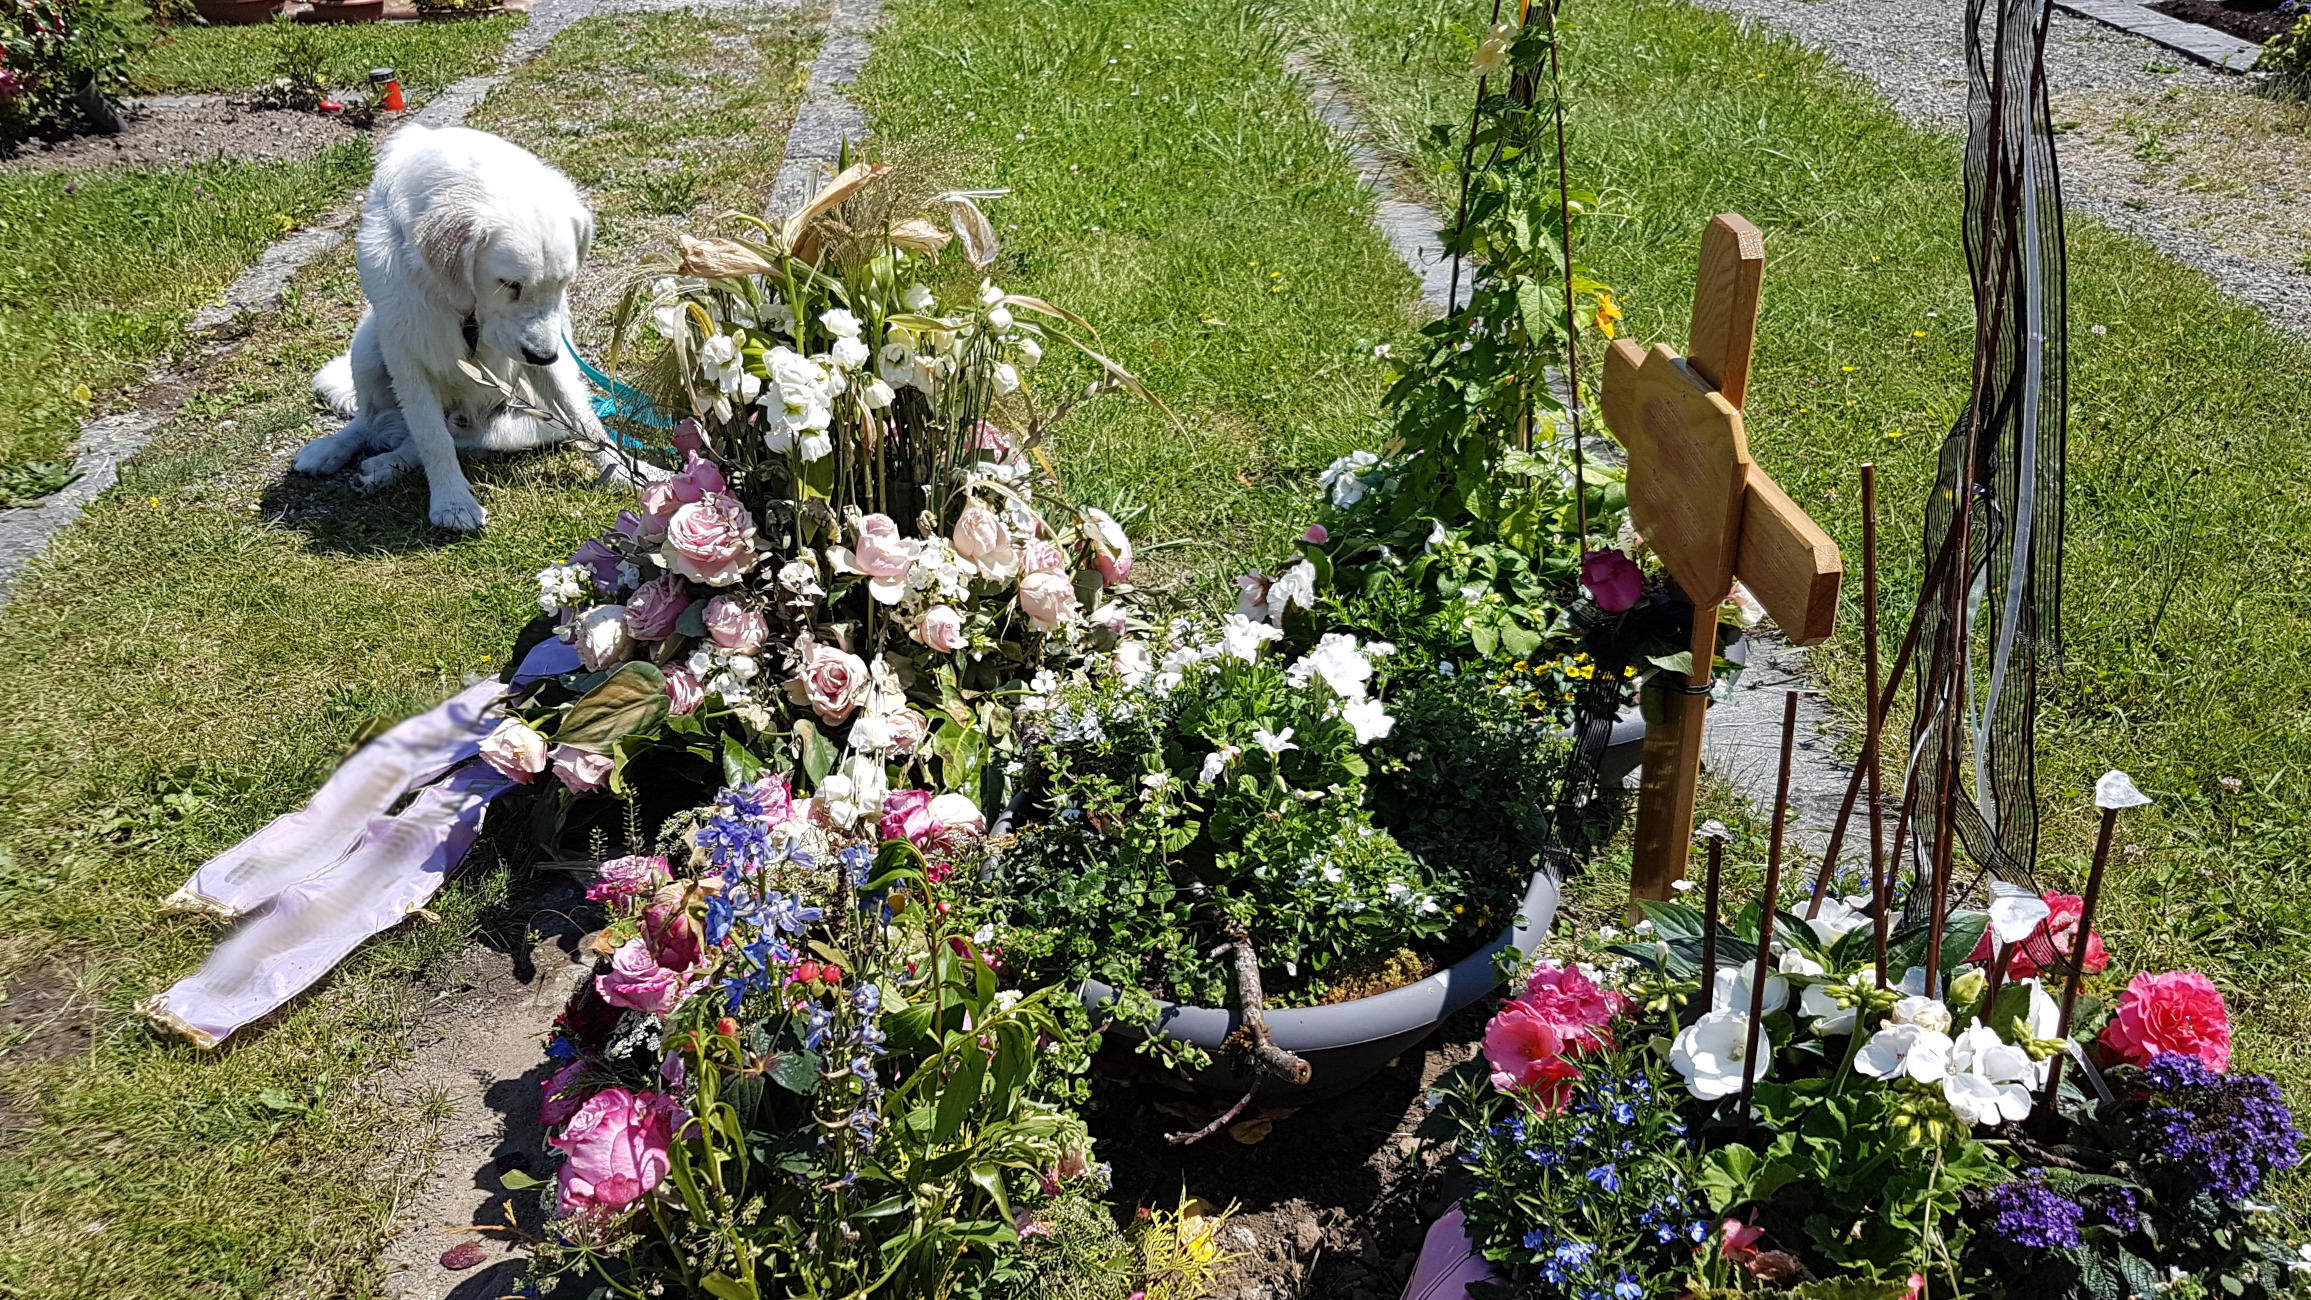 Ein frisches Grab mit Kreuz und Blumenschmuck in weiß, rosa, pink auf grünem Gras, ein weißer Goldie scheint traurig zu schauen